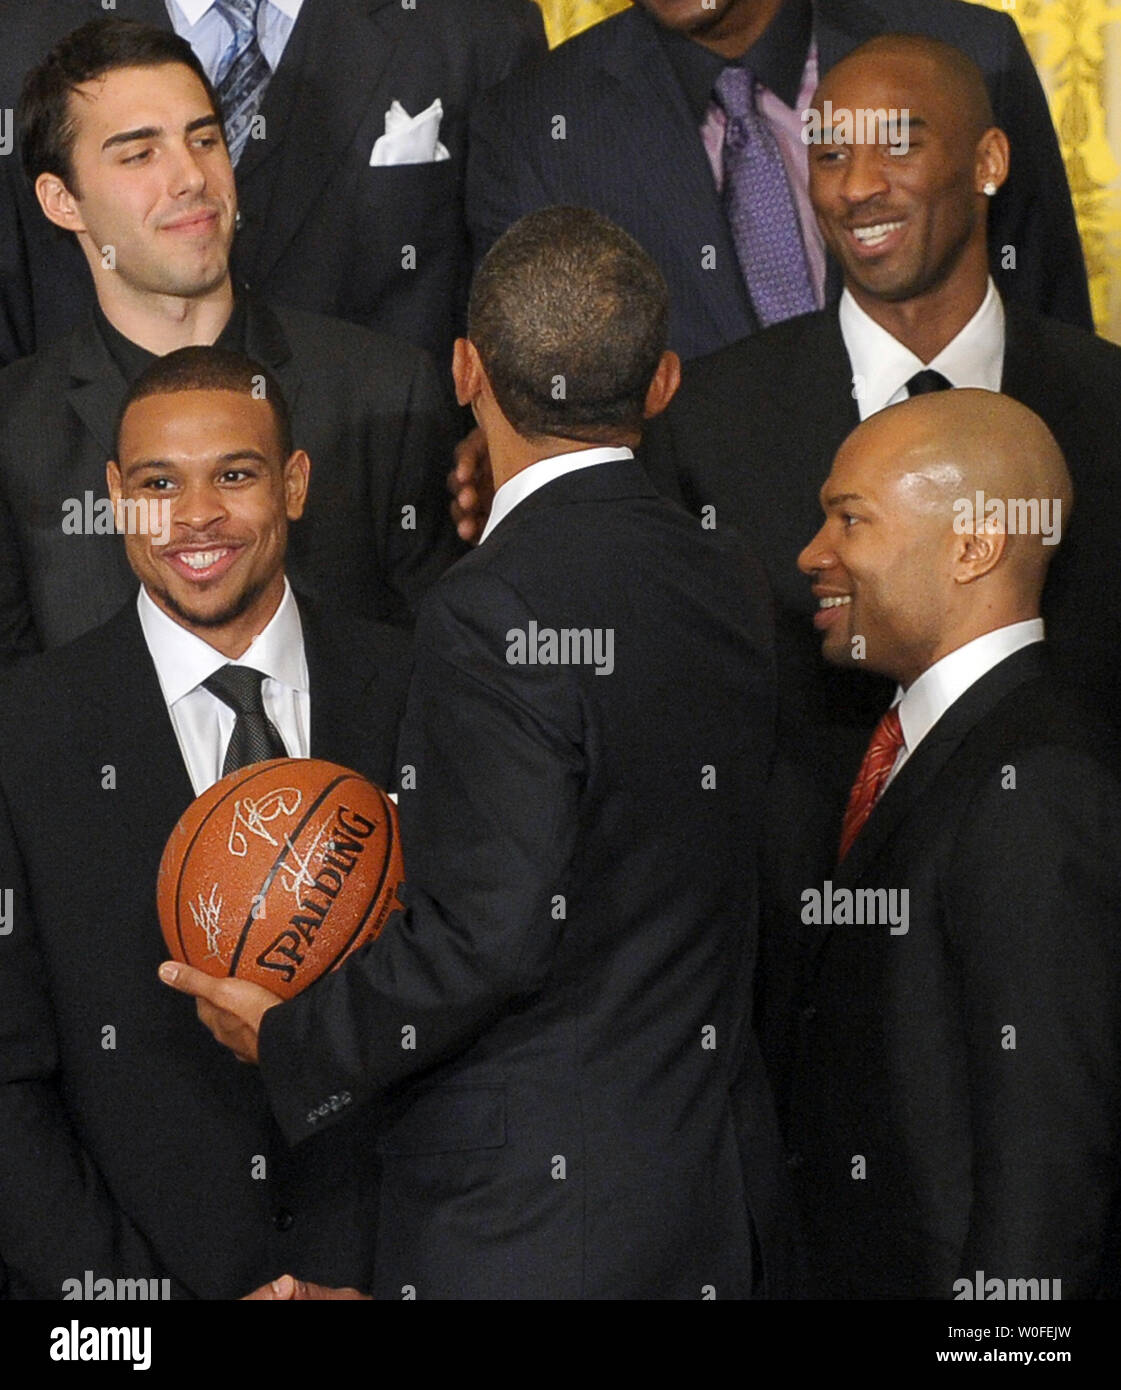 Us-Präsident Barack Obama begrüßt guard Kobe Bryant (oben rechts) und die anderen Mitglieder der National Basketball Association Meister Los Angeles Lakers 2009 im East Room des Weißen Hauses in Washington am 25. Januar 2010. UPI/Roger L. Wollenberg Stockfoto